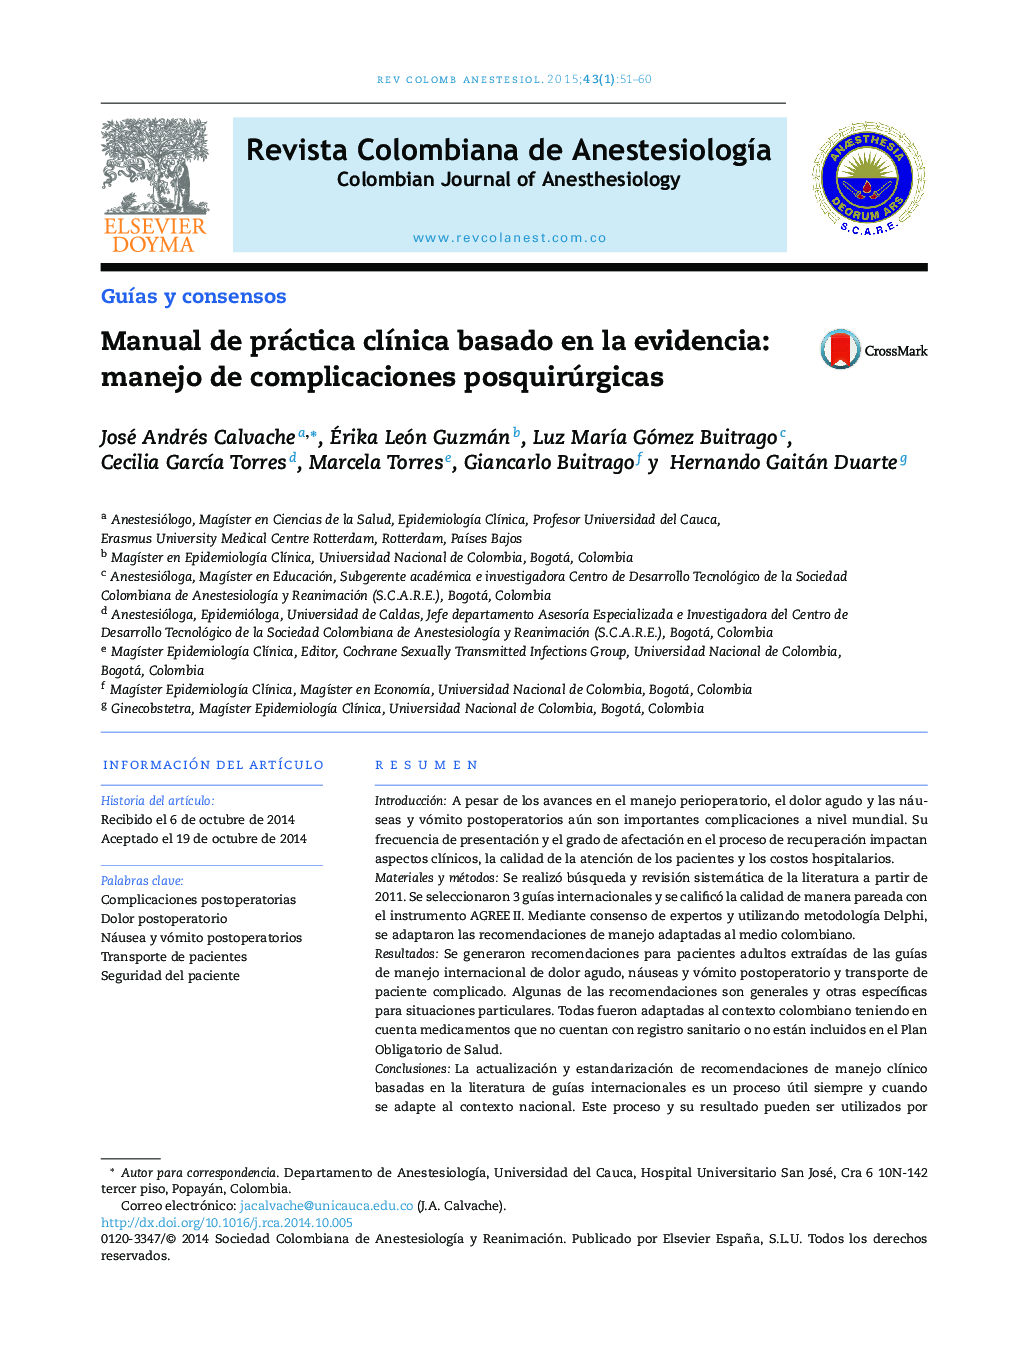 Manual de práctica clínica basado en la evidencia: manejo de complicaciones posquirúrgicas